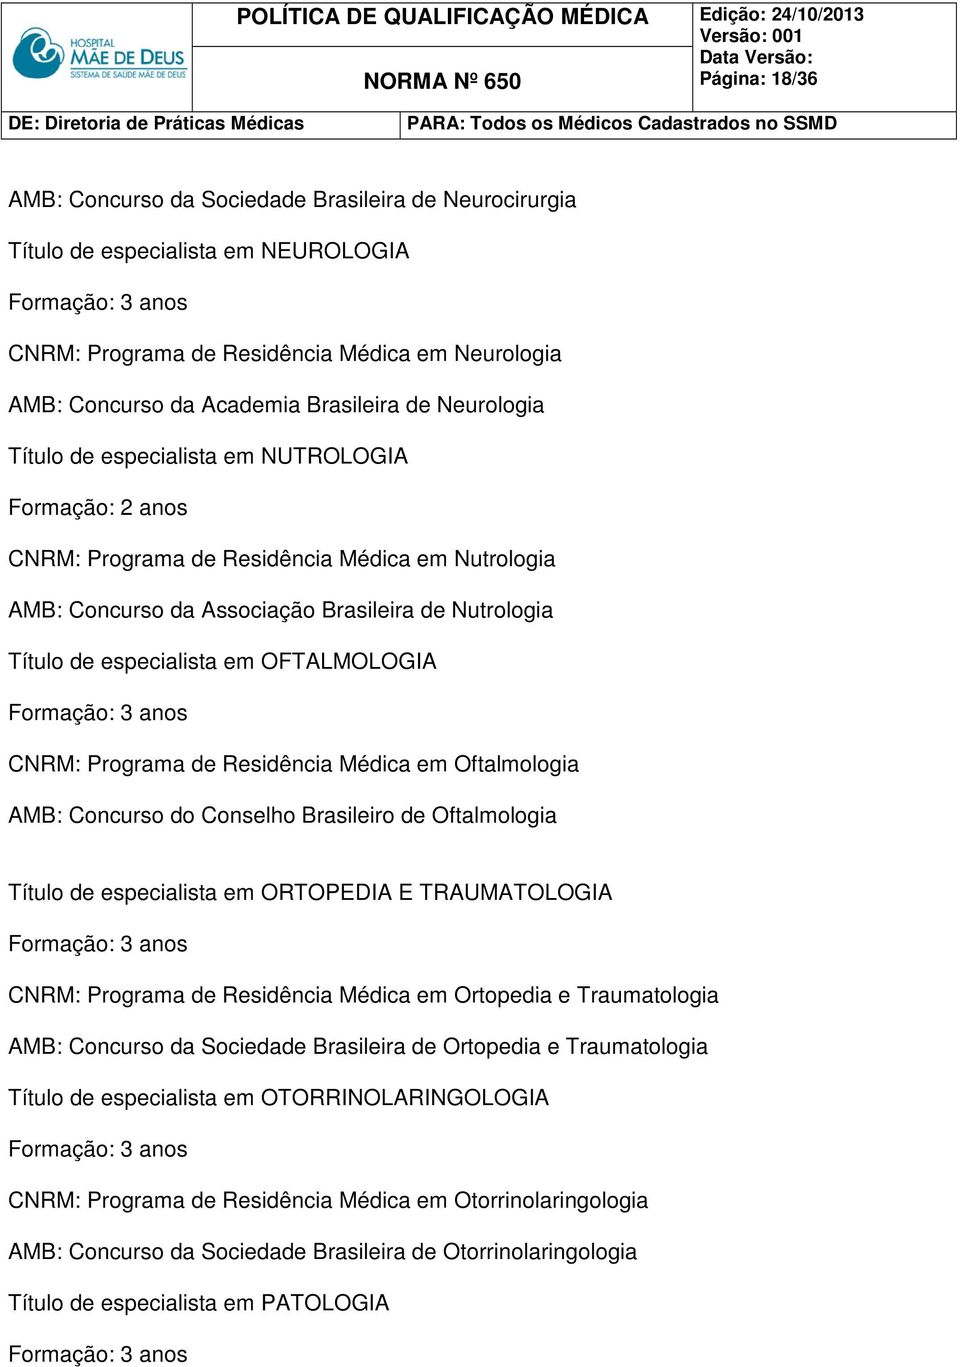 Programa de Residência Médica em Oftalmologia AMB: Concurso do Conselho Brasileiro de Oftalmologia Título de especialista em ORTOPEDIA E TRAUMATOLOGIA CNRM: Programa de Residência Médica em Ortopedia